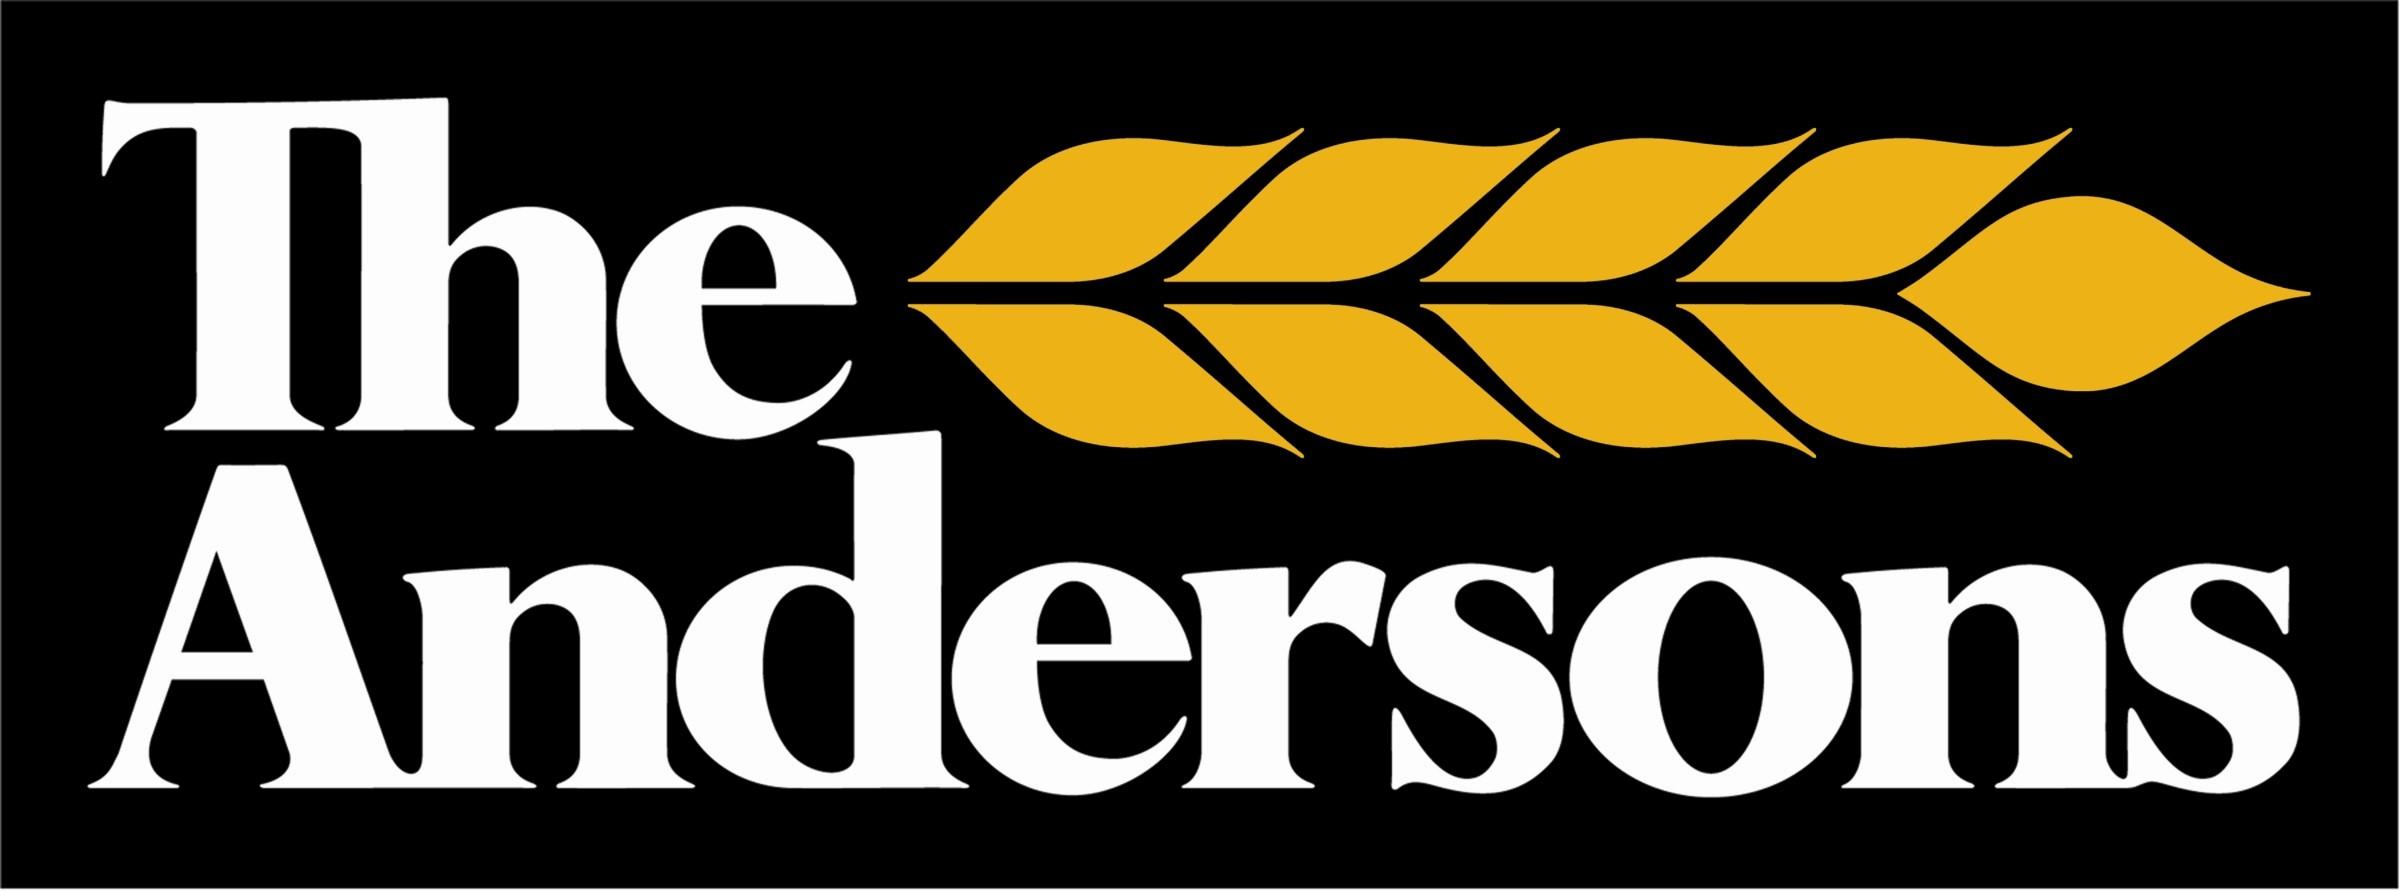 Anderson Logo - Anderson logo